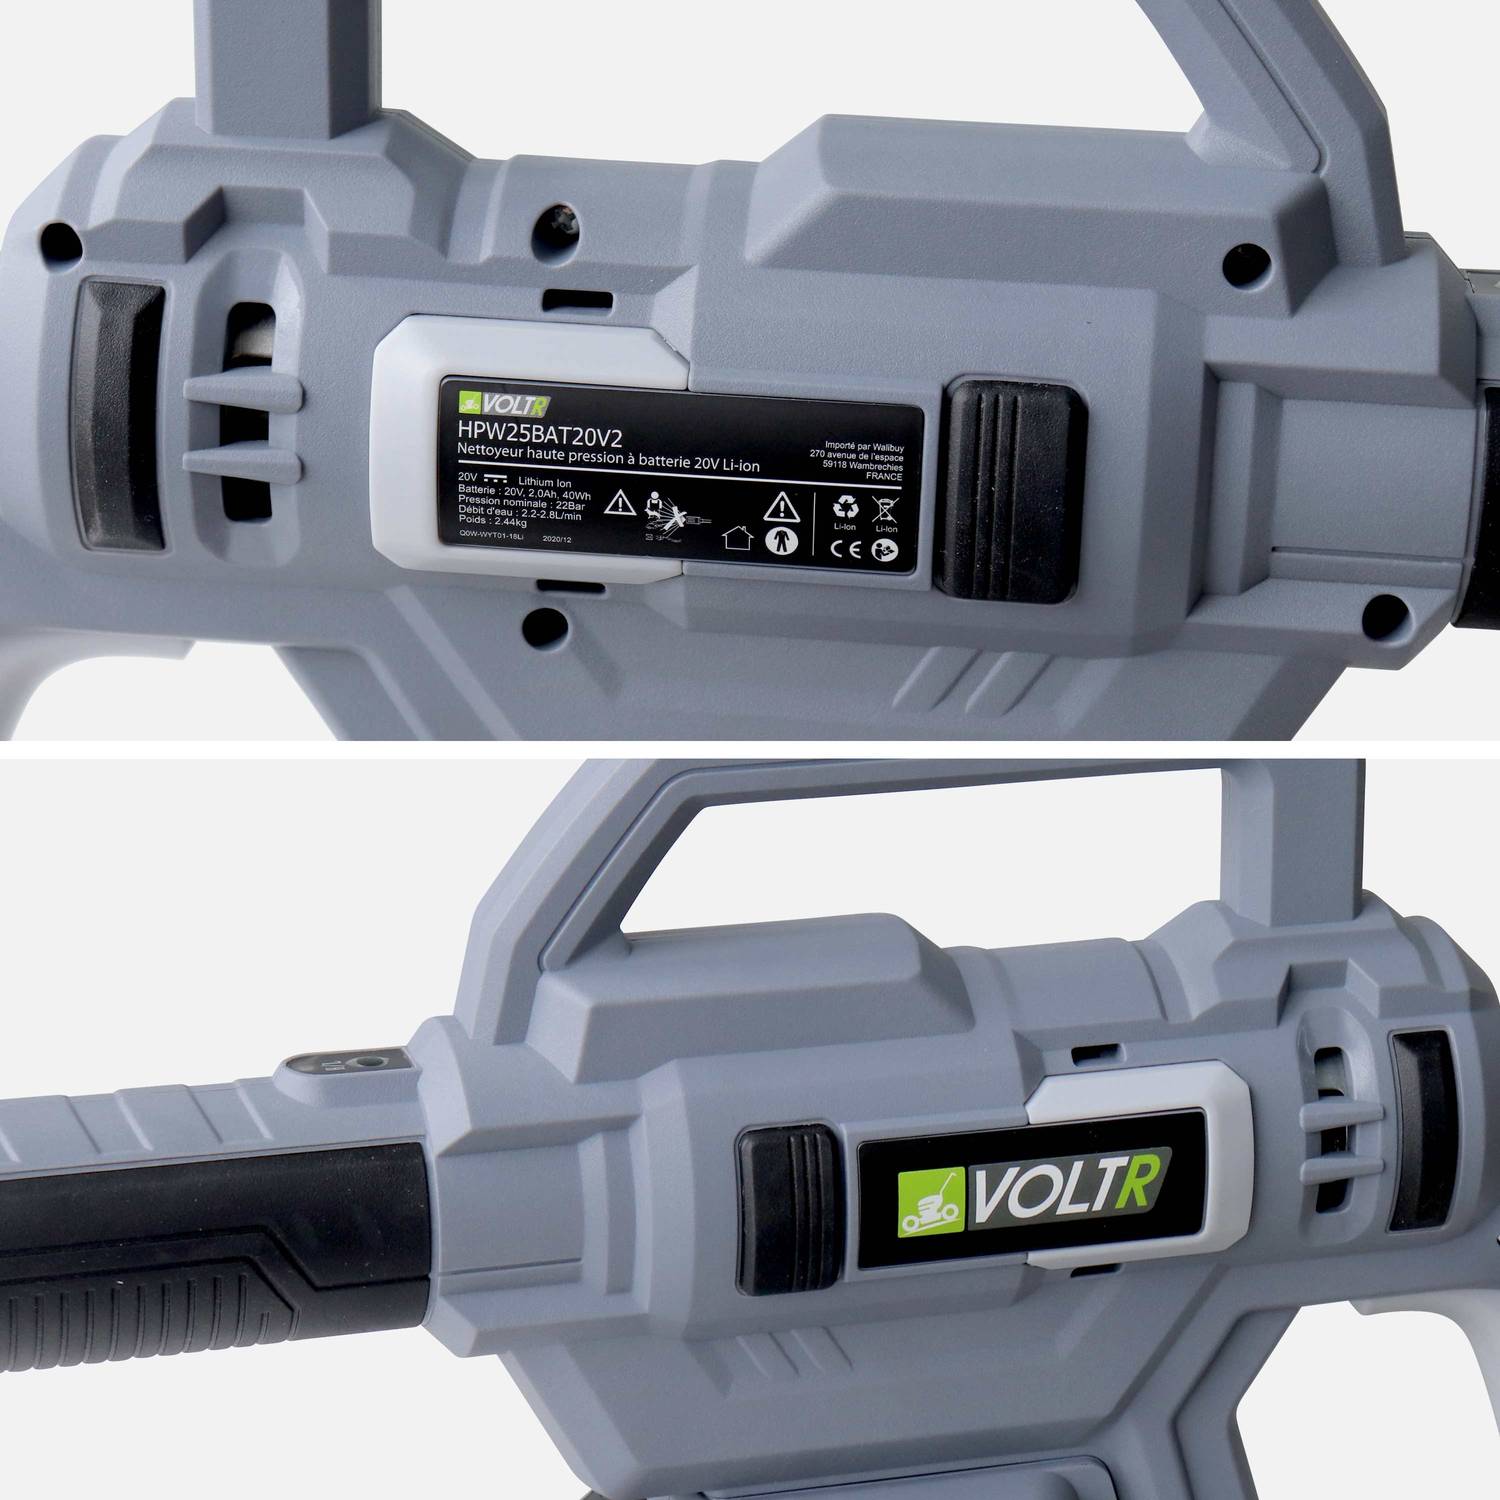 VOLTR - Idropulitrice a 25 bar con batteria da 20 V - kit completo di spazzole, ugello a getto variabile, serbatoio per il detergente, batteria e caricabatterie in dotazione Photo6